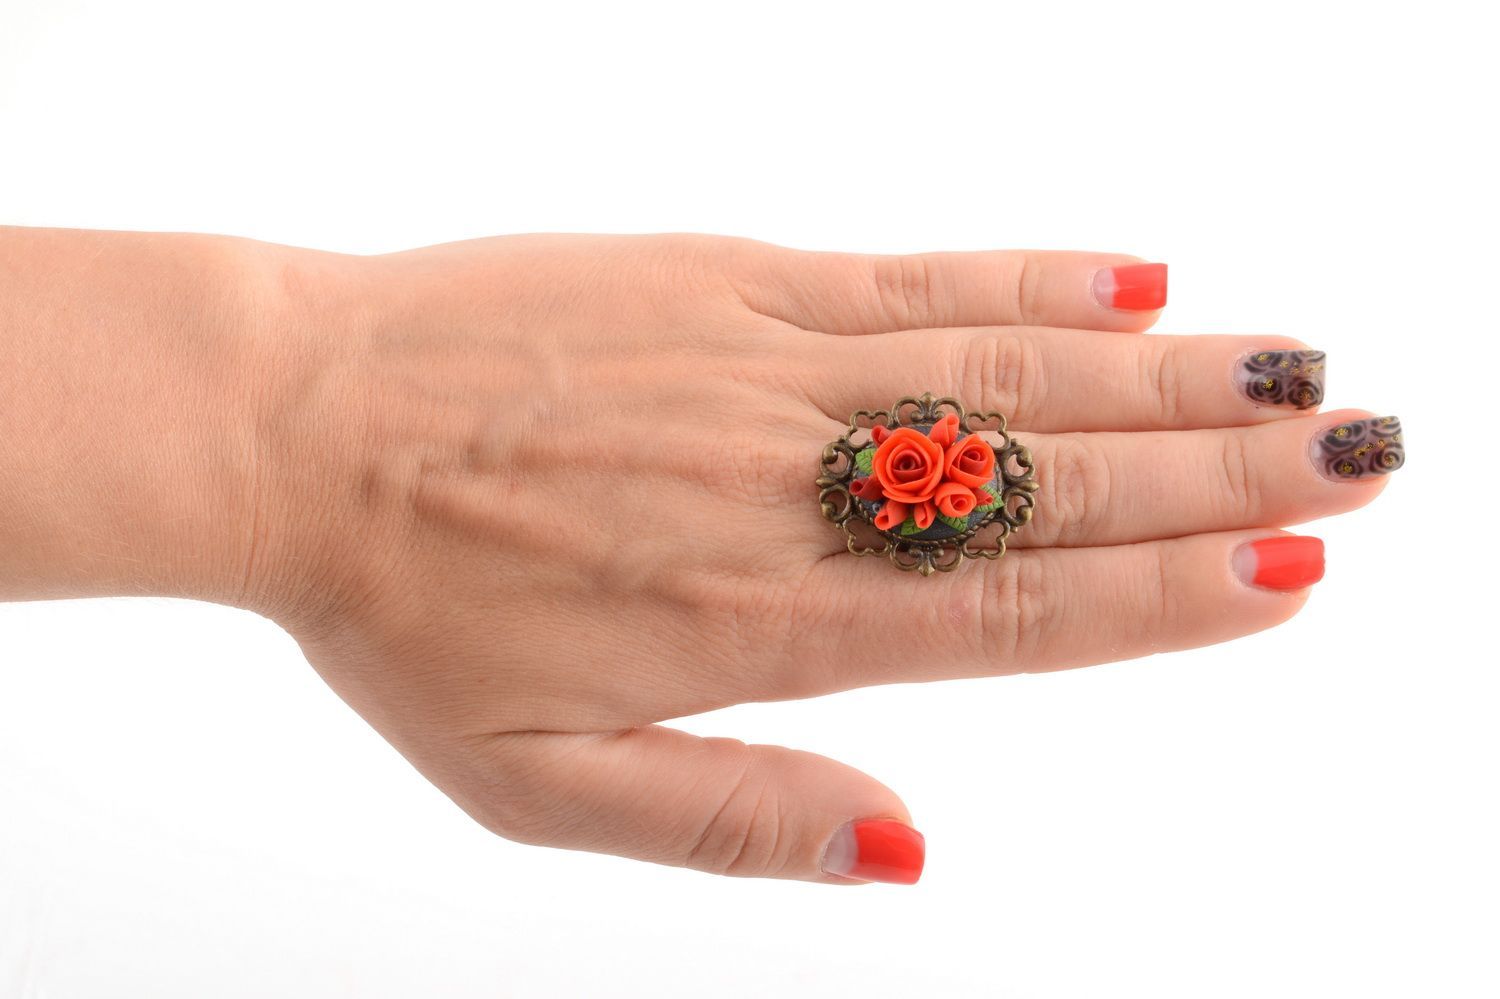 Кольцо цветок из полимерной глины красное диаметром 17 мм красивое ручной работы фото 5